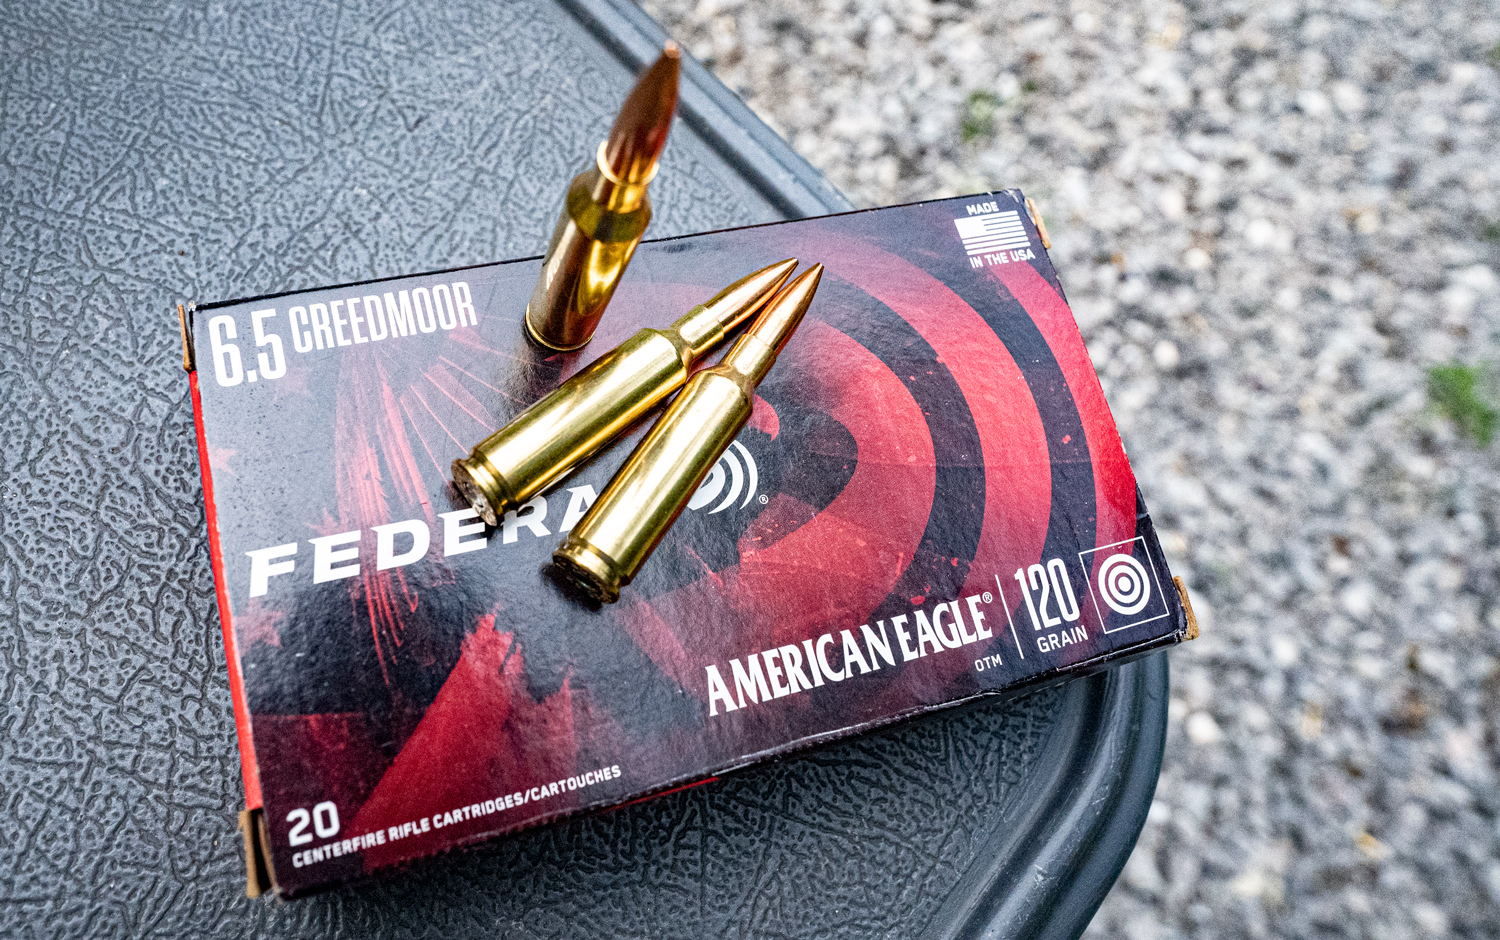 Federal 6.5 Creedmoor ammo